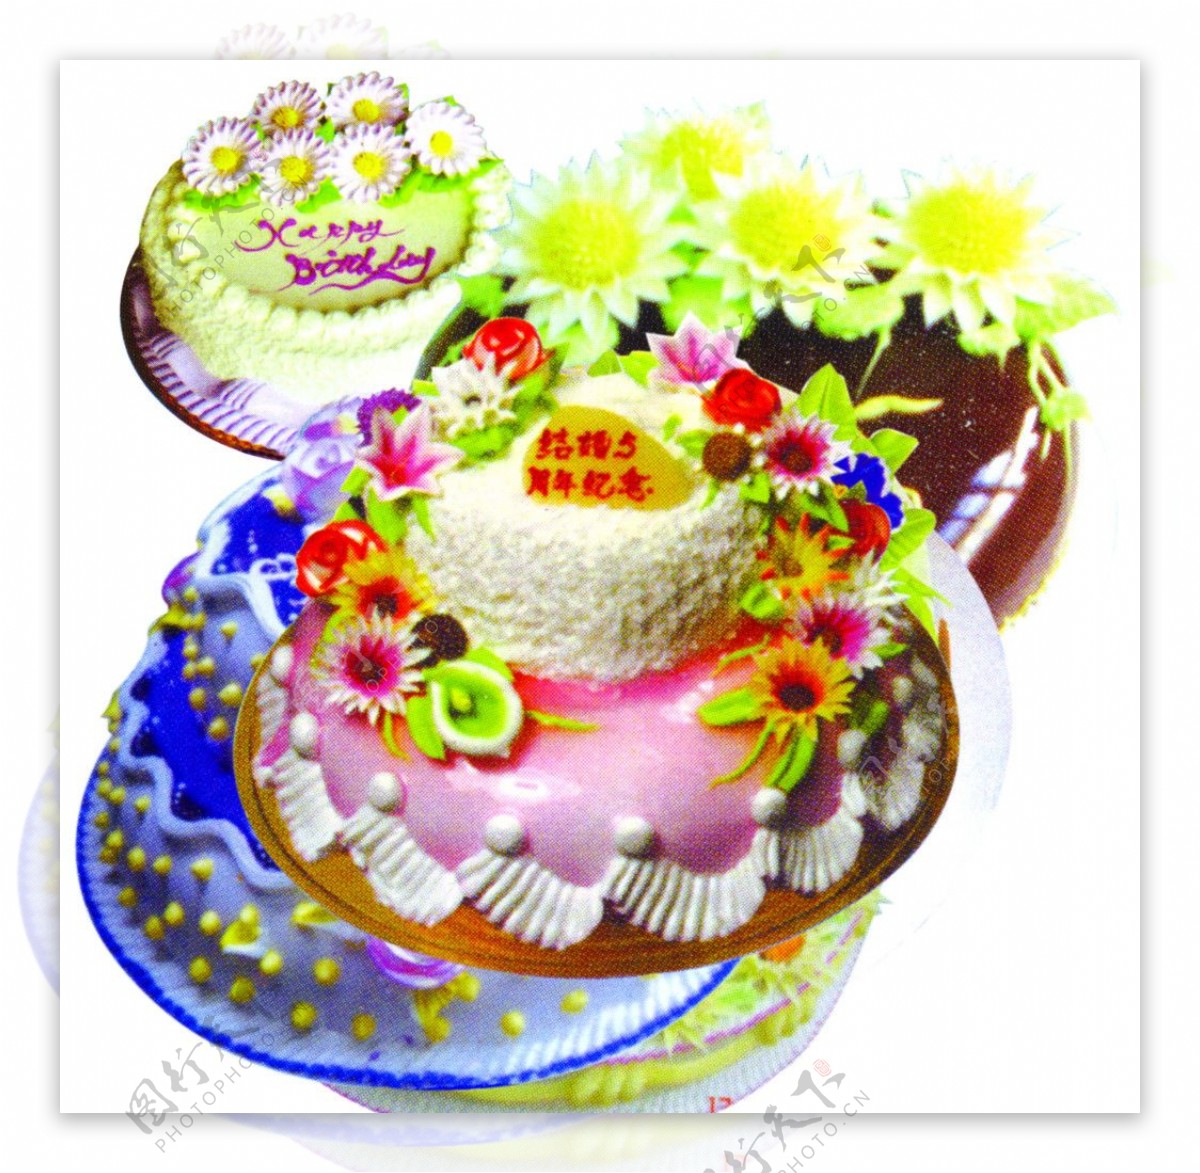 裝飾元素 生日蛋糕 免摳元素 插畫元素, 裝飾元素, 生日蛋糕, 自由元素素材圖案，PSD和PNG圖片免費下載